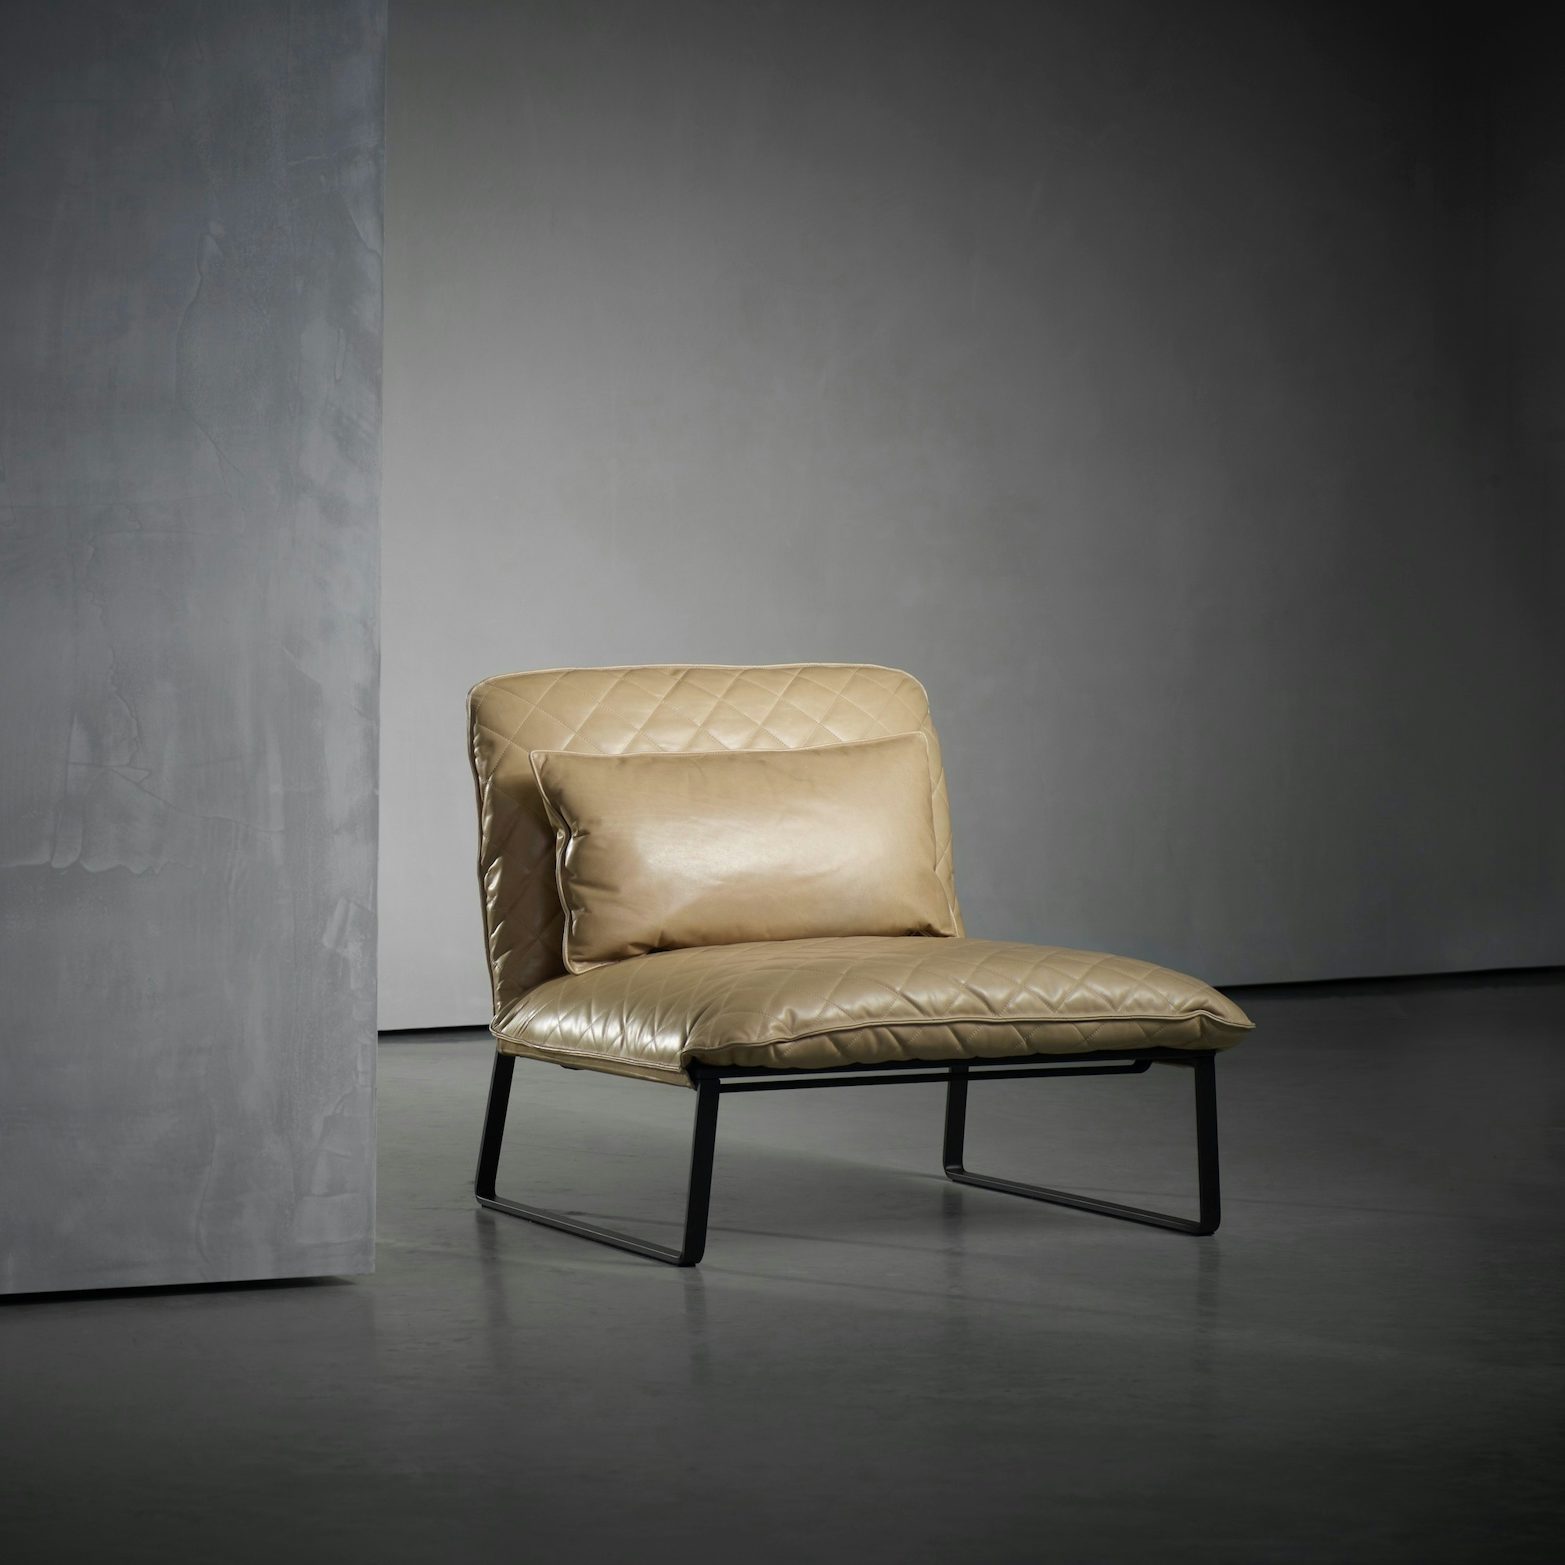 Piet-Boon-Kekke-Lounge-Chair-1